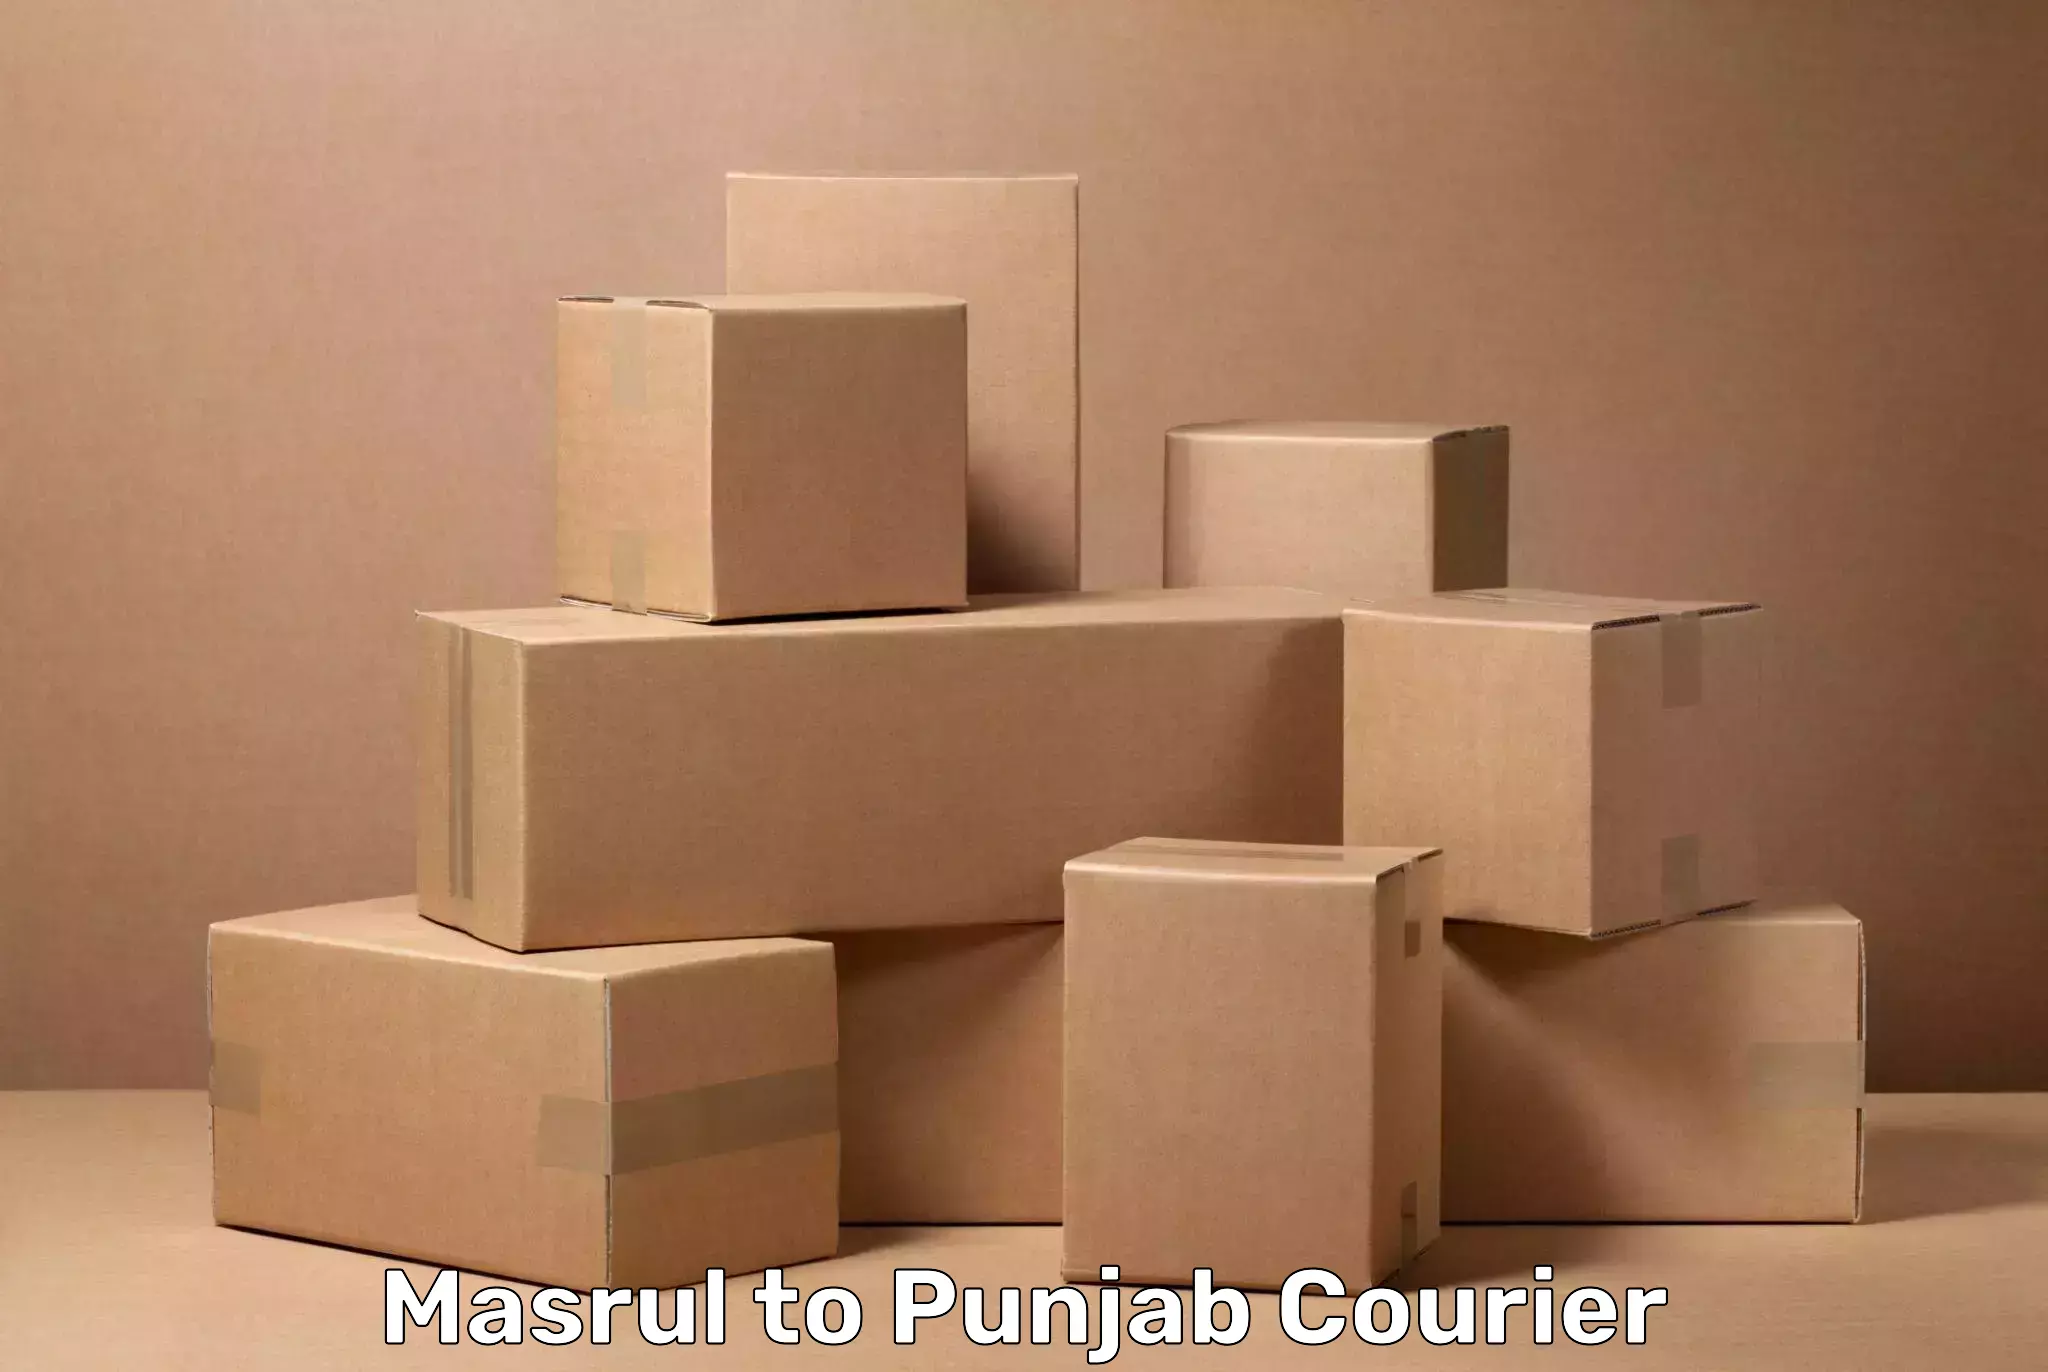 Digital baggage courier Masrul to Punjab